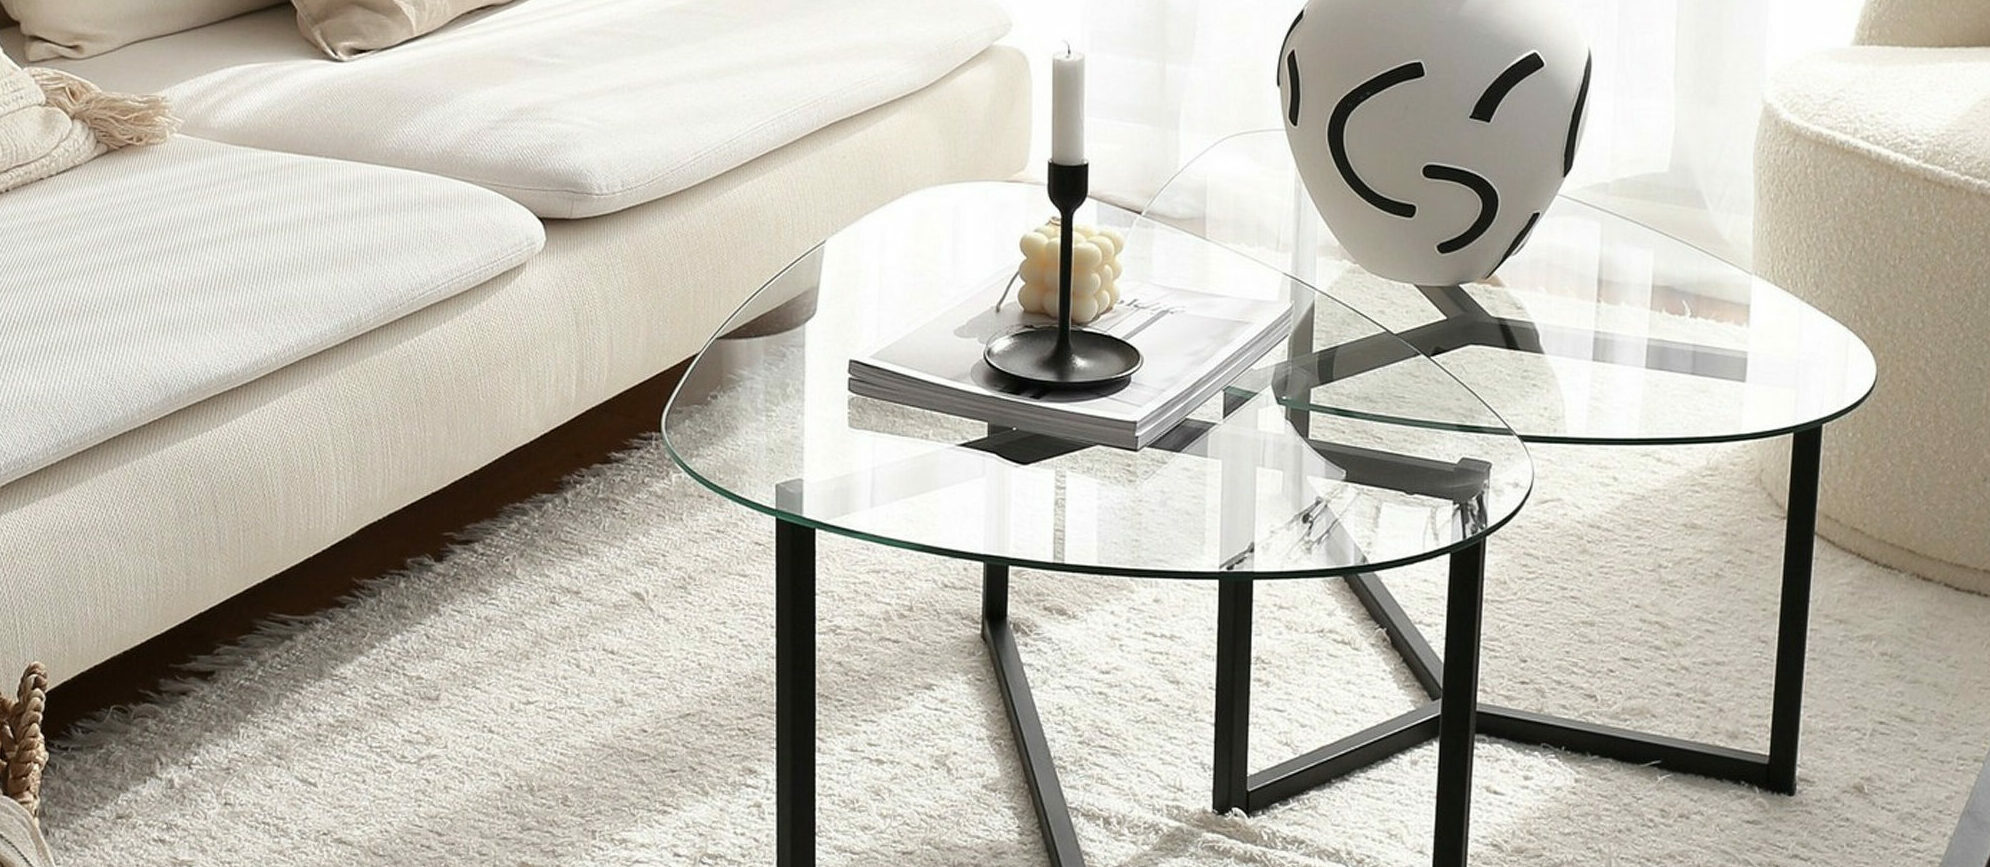 Leonita satsbord - Klart glas med svart underrede - Soffbord + sidobord - Folkets Möbler